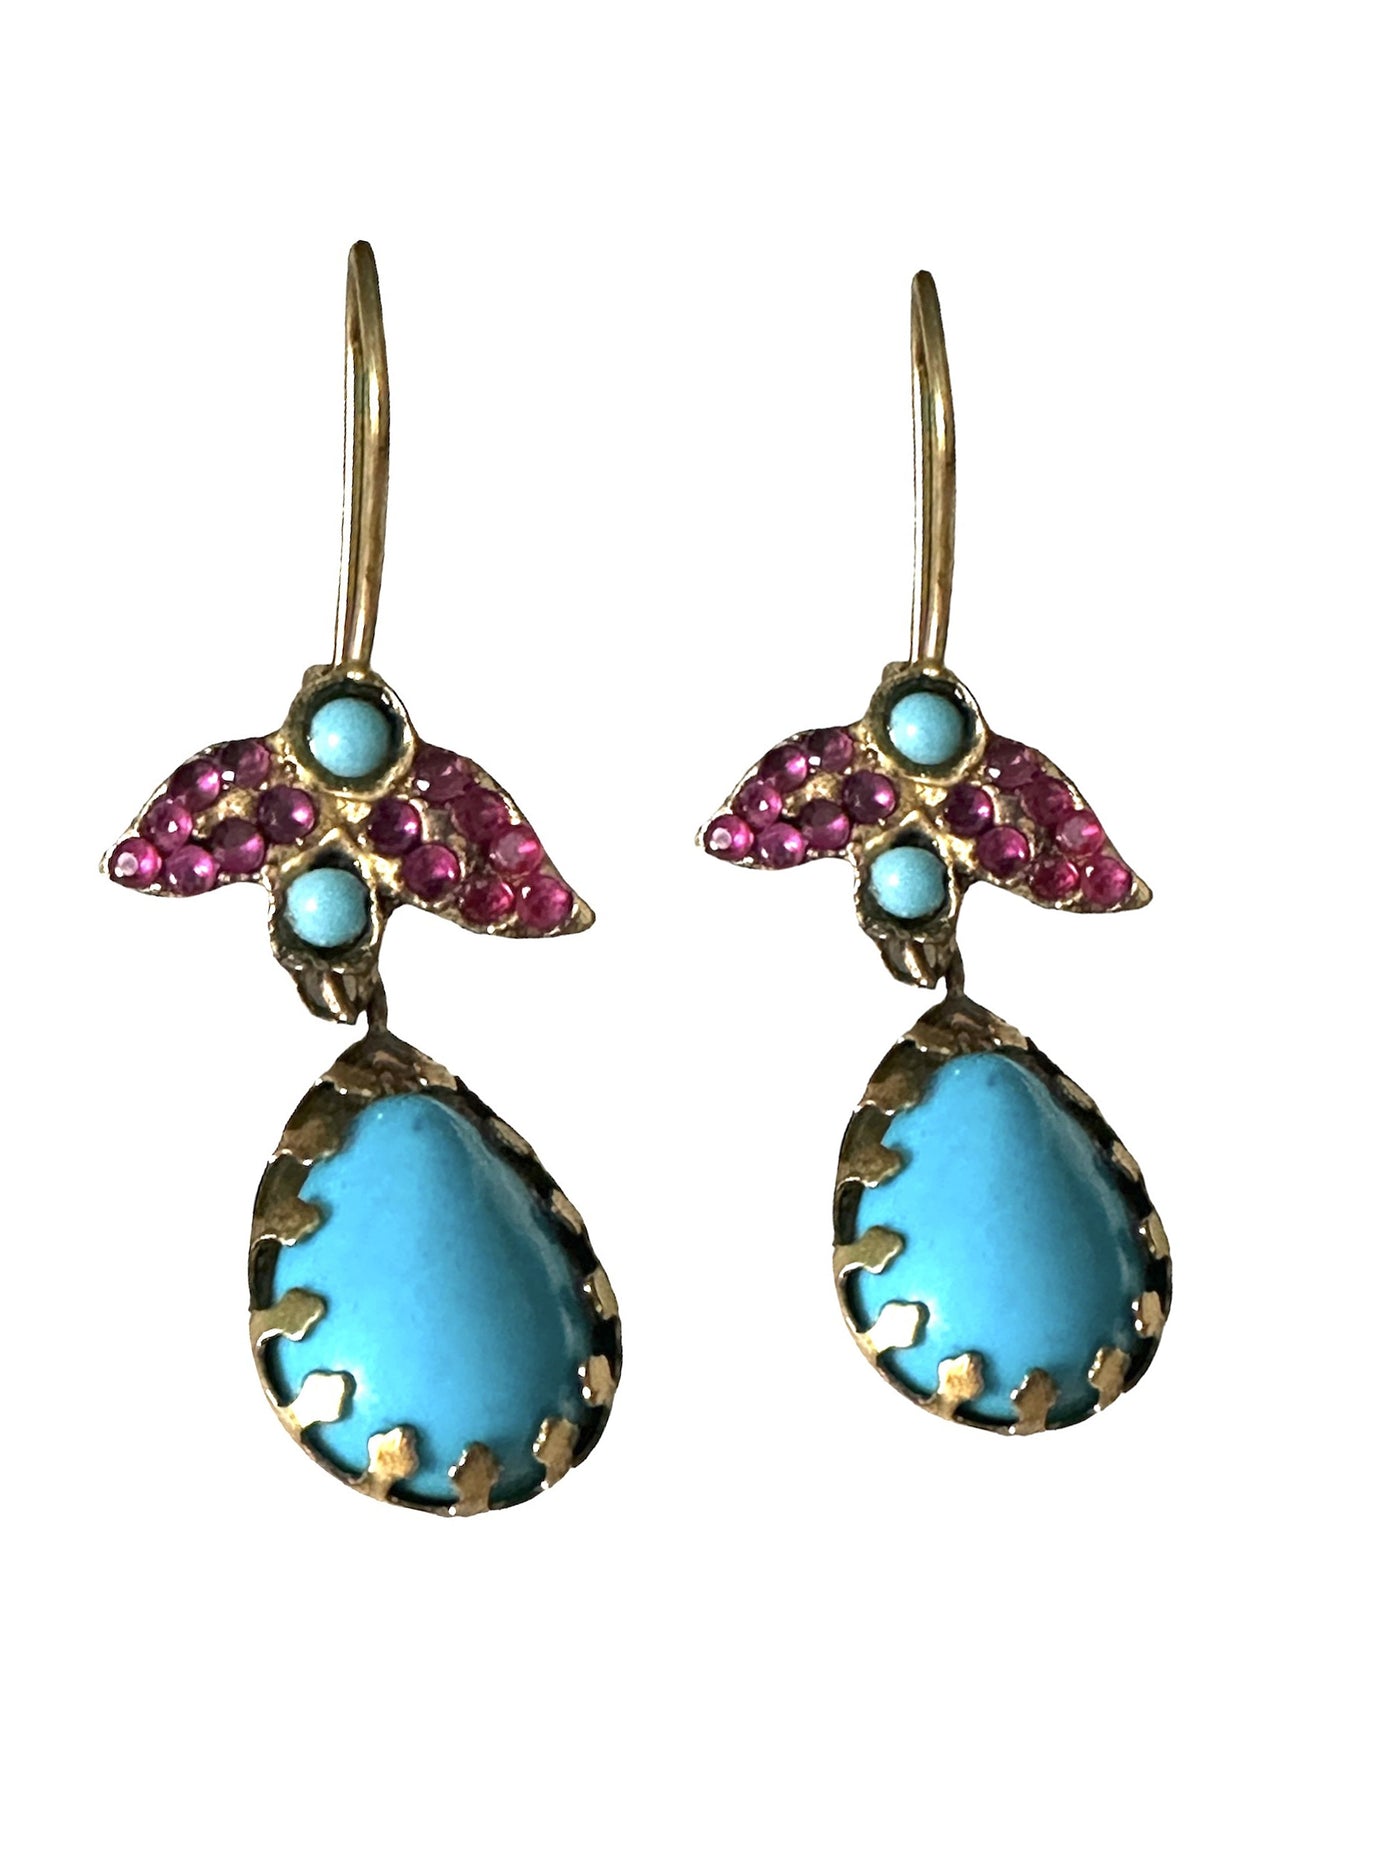 Dahlia earrings